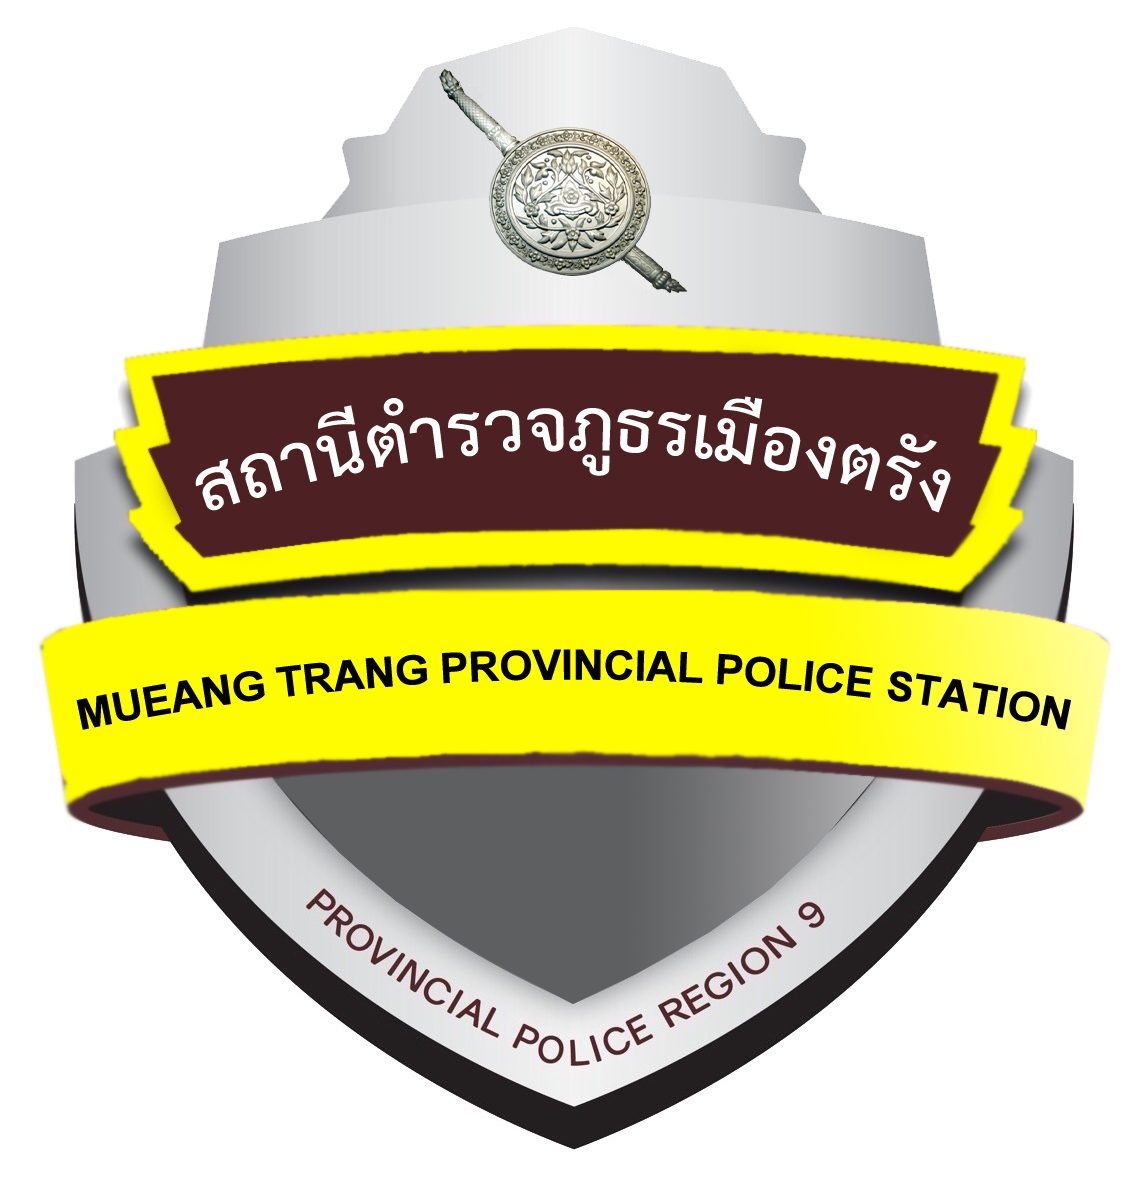 สถานีตำรวจภูธรเมืองตรัง logo